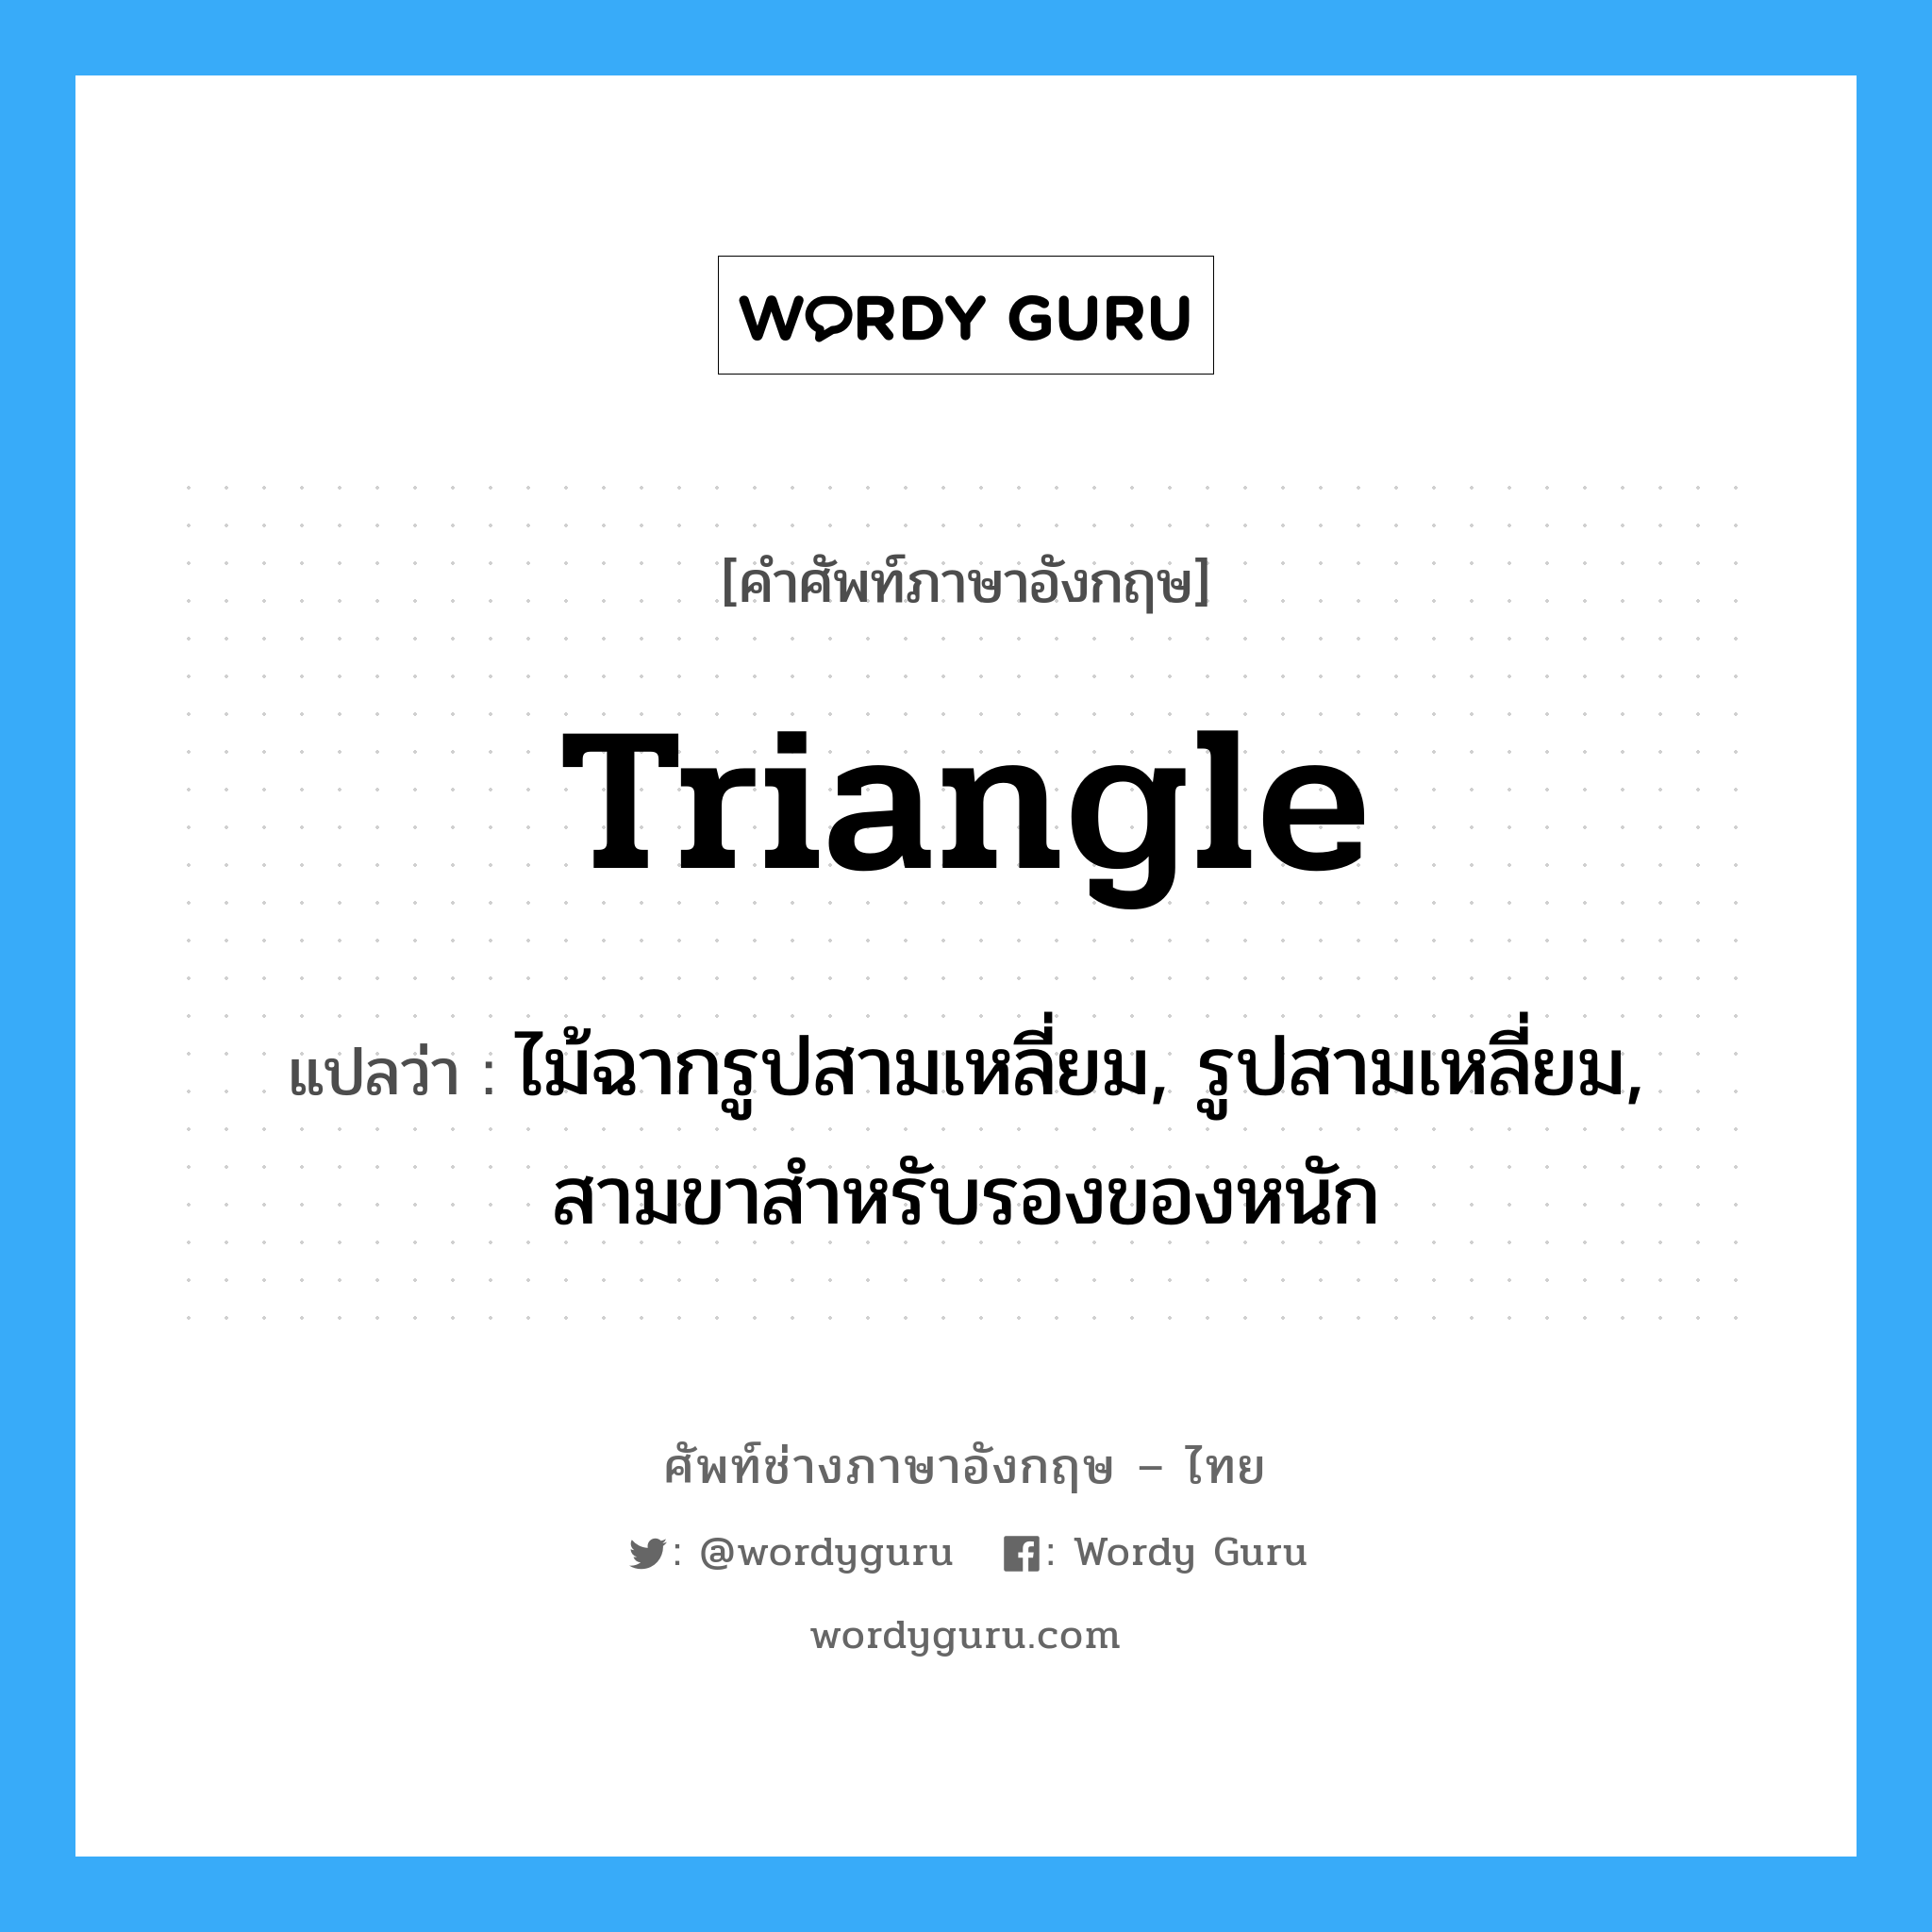 triangle แปลว่า?, คำศัพท์ช่างภาษาอังกฤษ - ไทย triangle คำศัพท์ภาษาอังกฤษ triangle แปลว่า ไม้ฉากรูปสามเหลี่ยม, รูปสามเหลี่ยม, สามขาสำหรับรองของหนัก